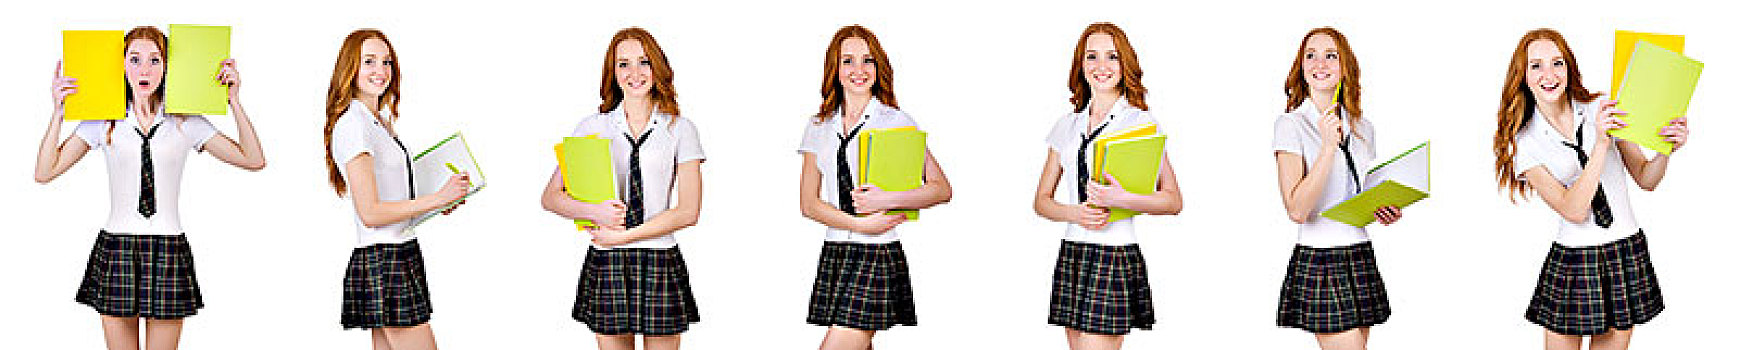 年轻,学生,女性,课本,隔绝,白色背景